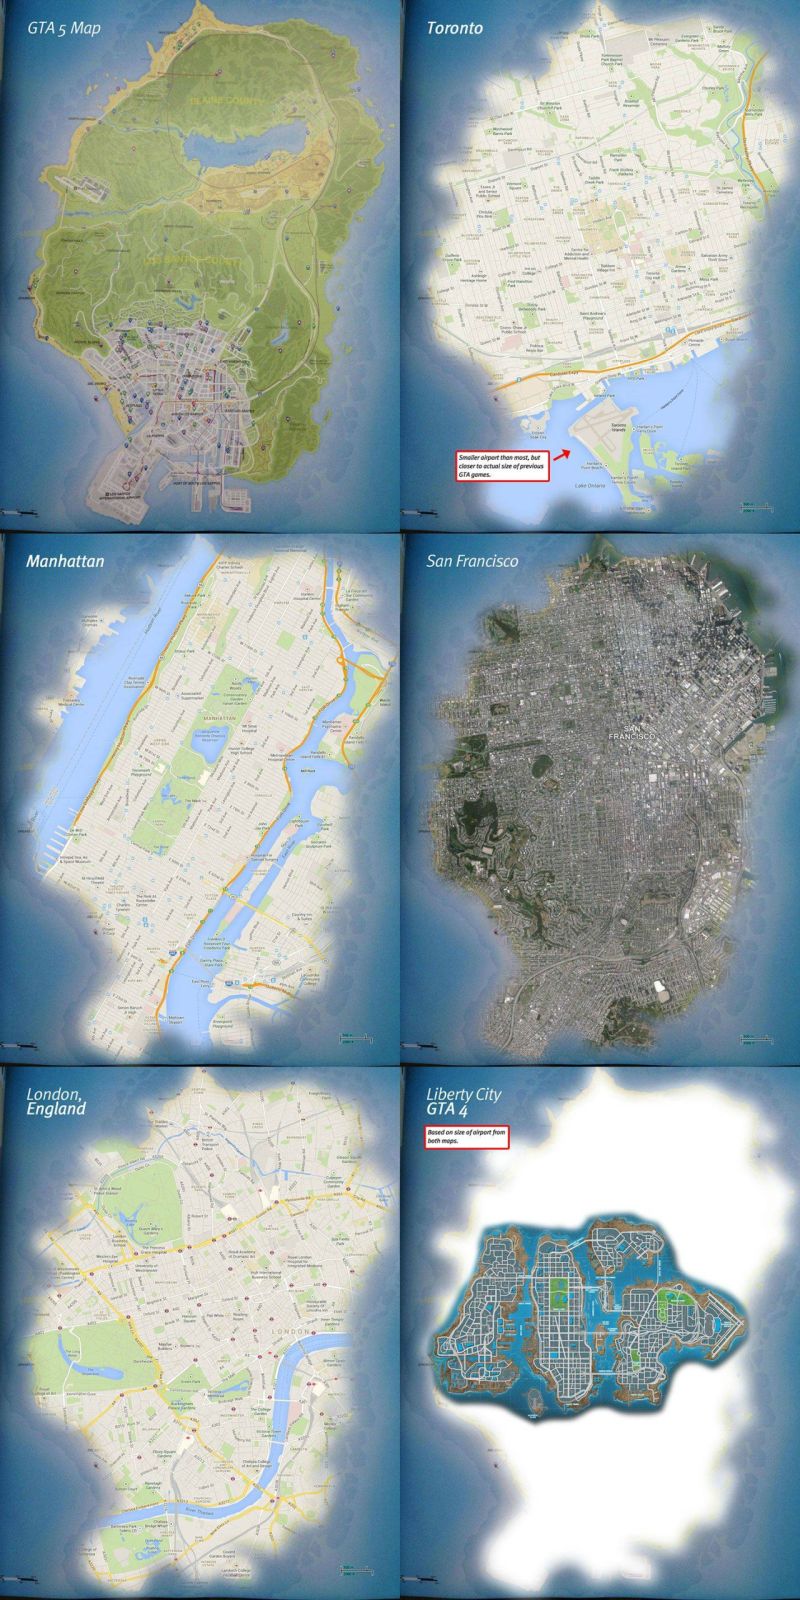 Entendendo a extensão do mapa - GTA V